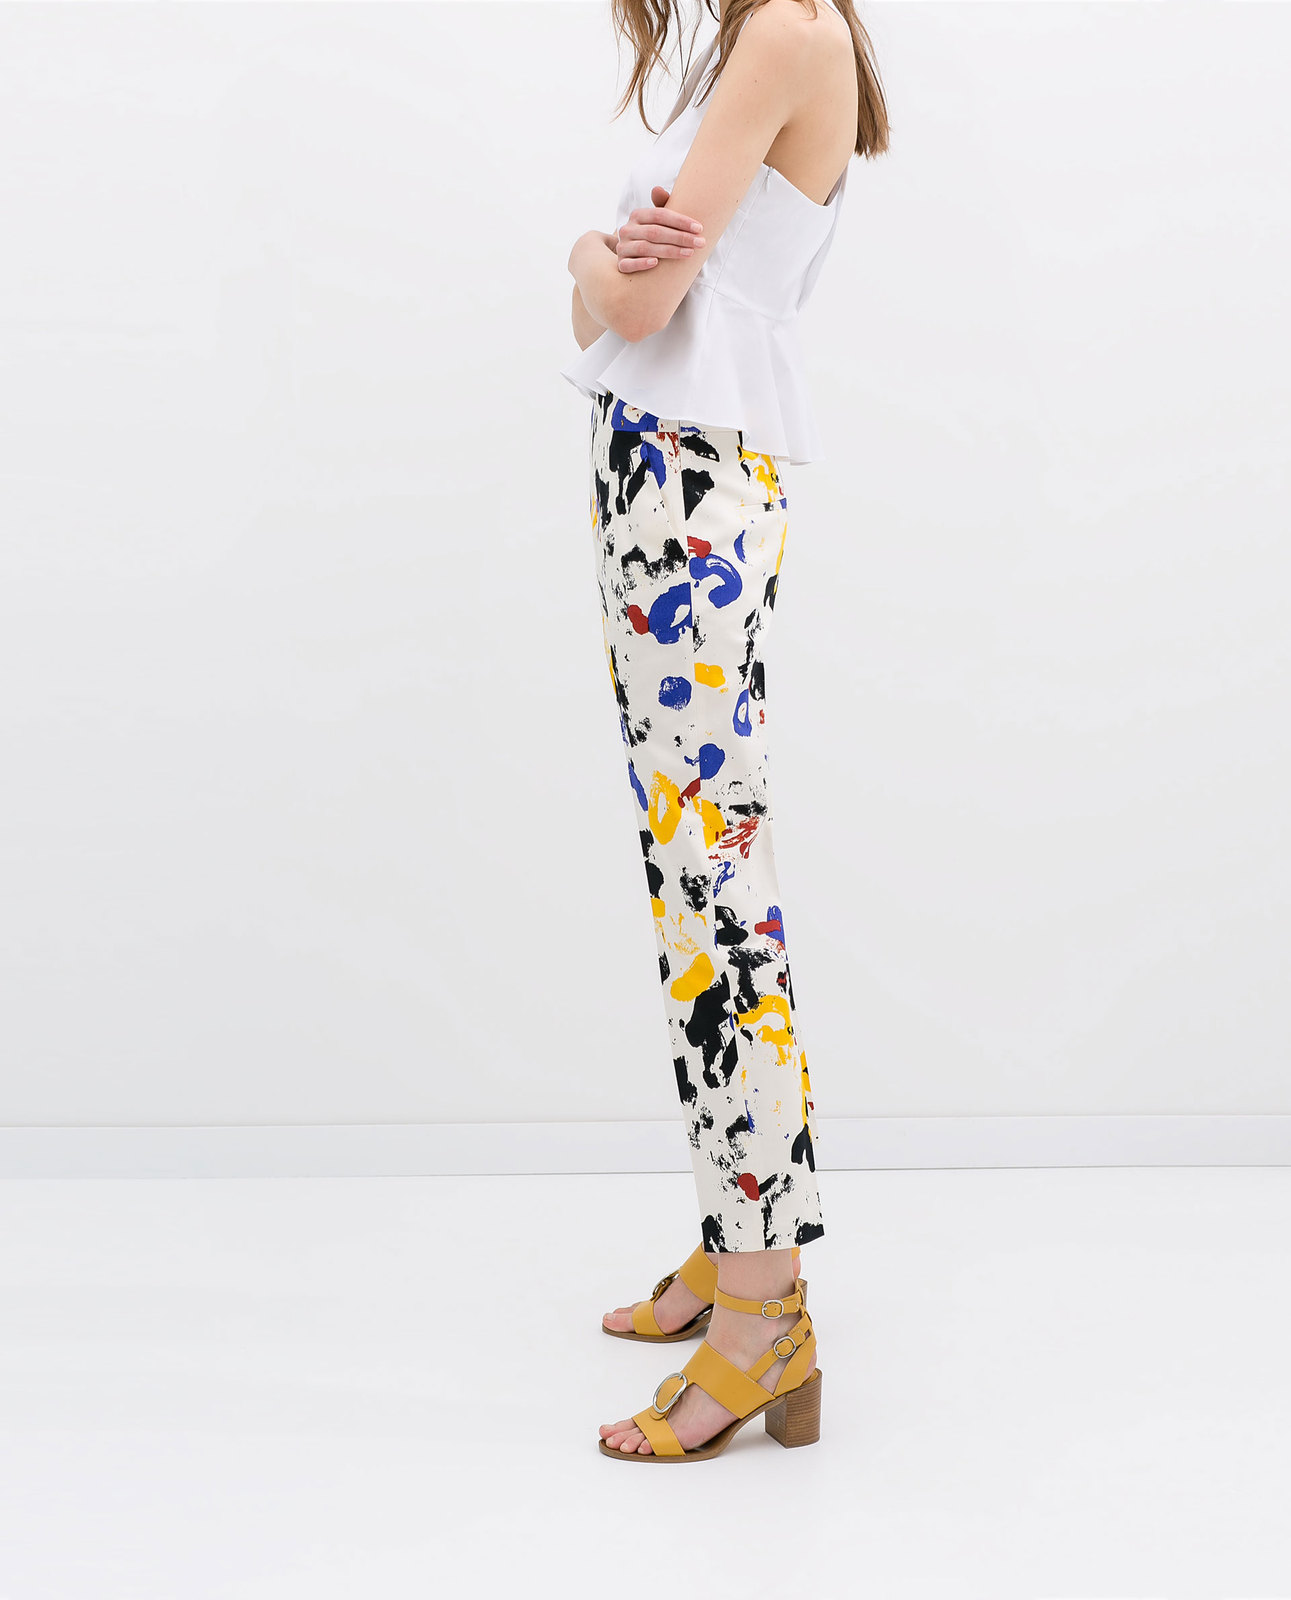 Zara festékmintás színes nadrág 2014.4.15 #56469 fotója